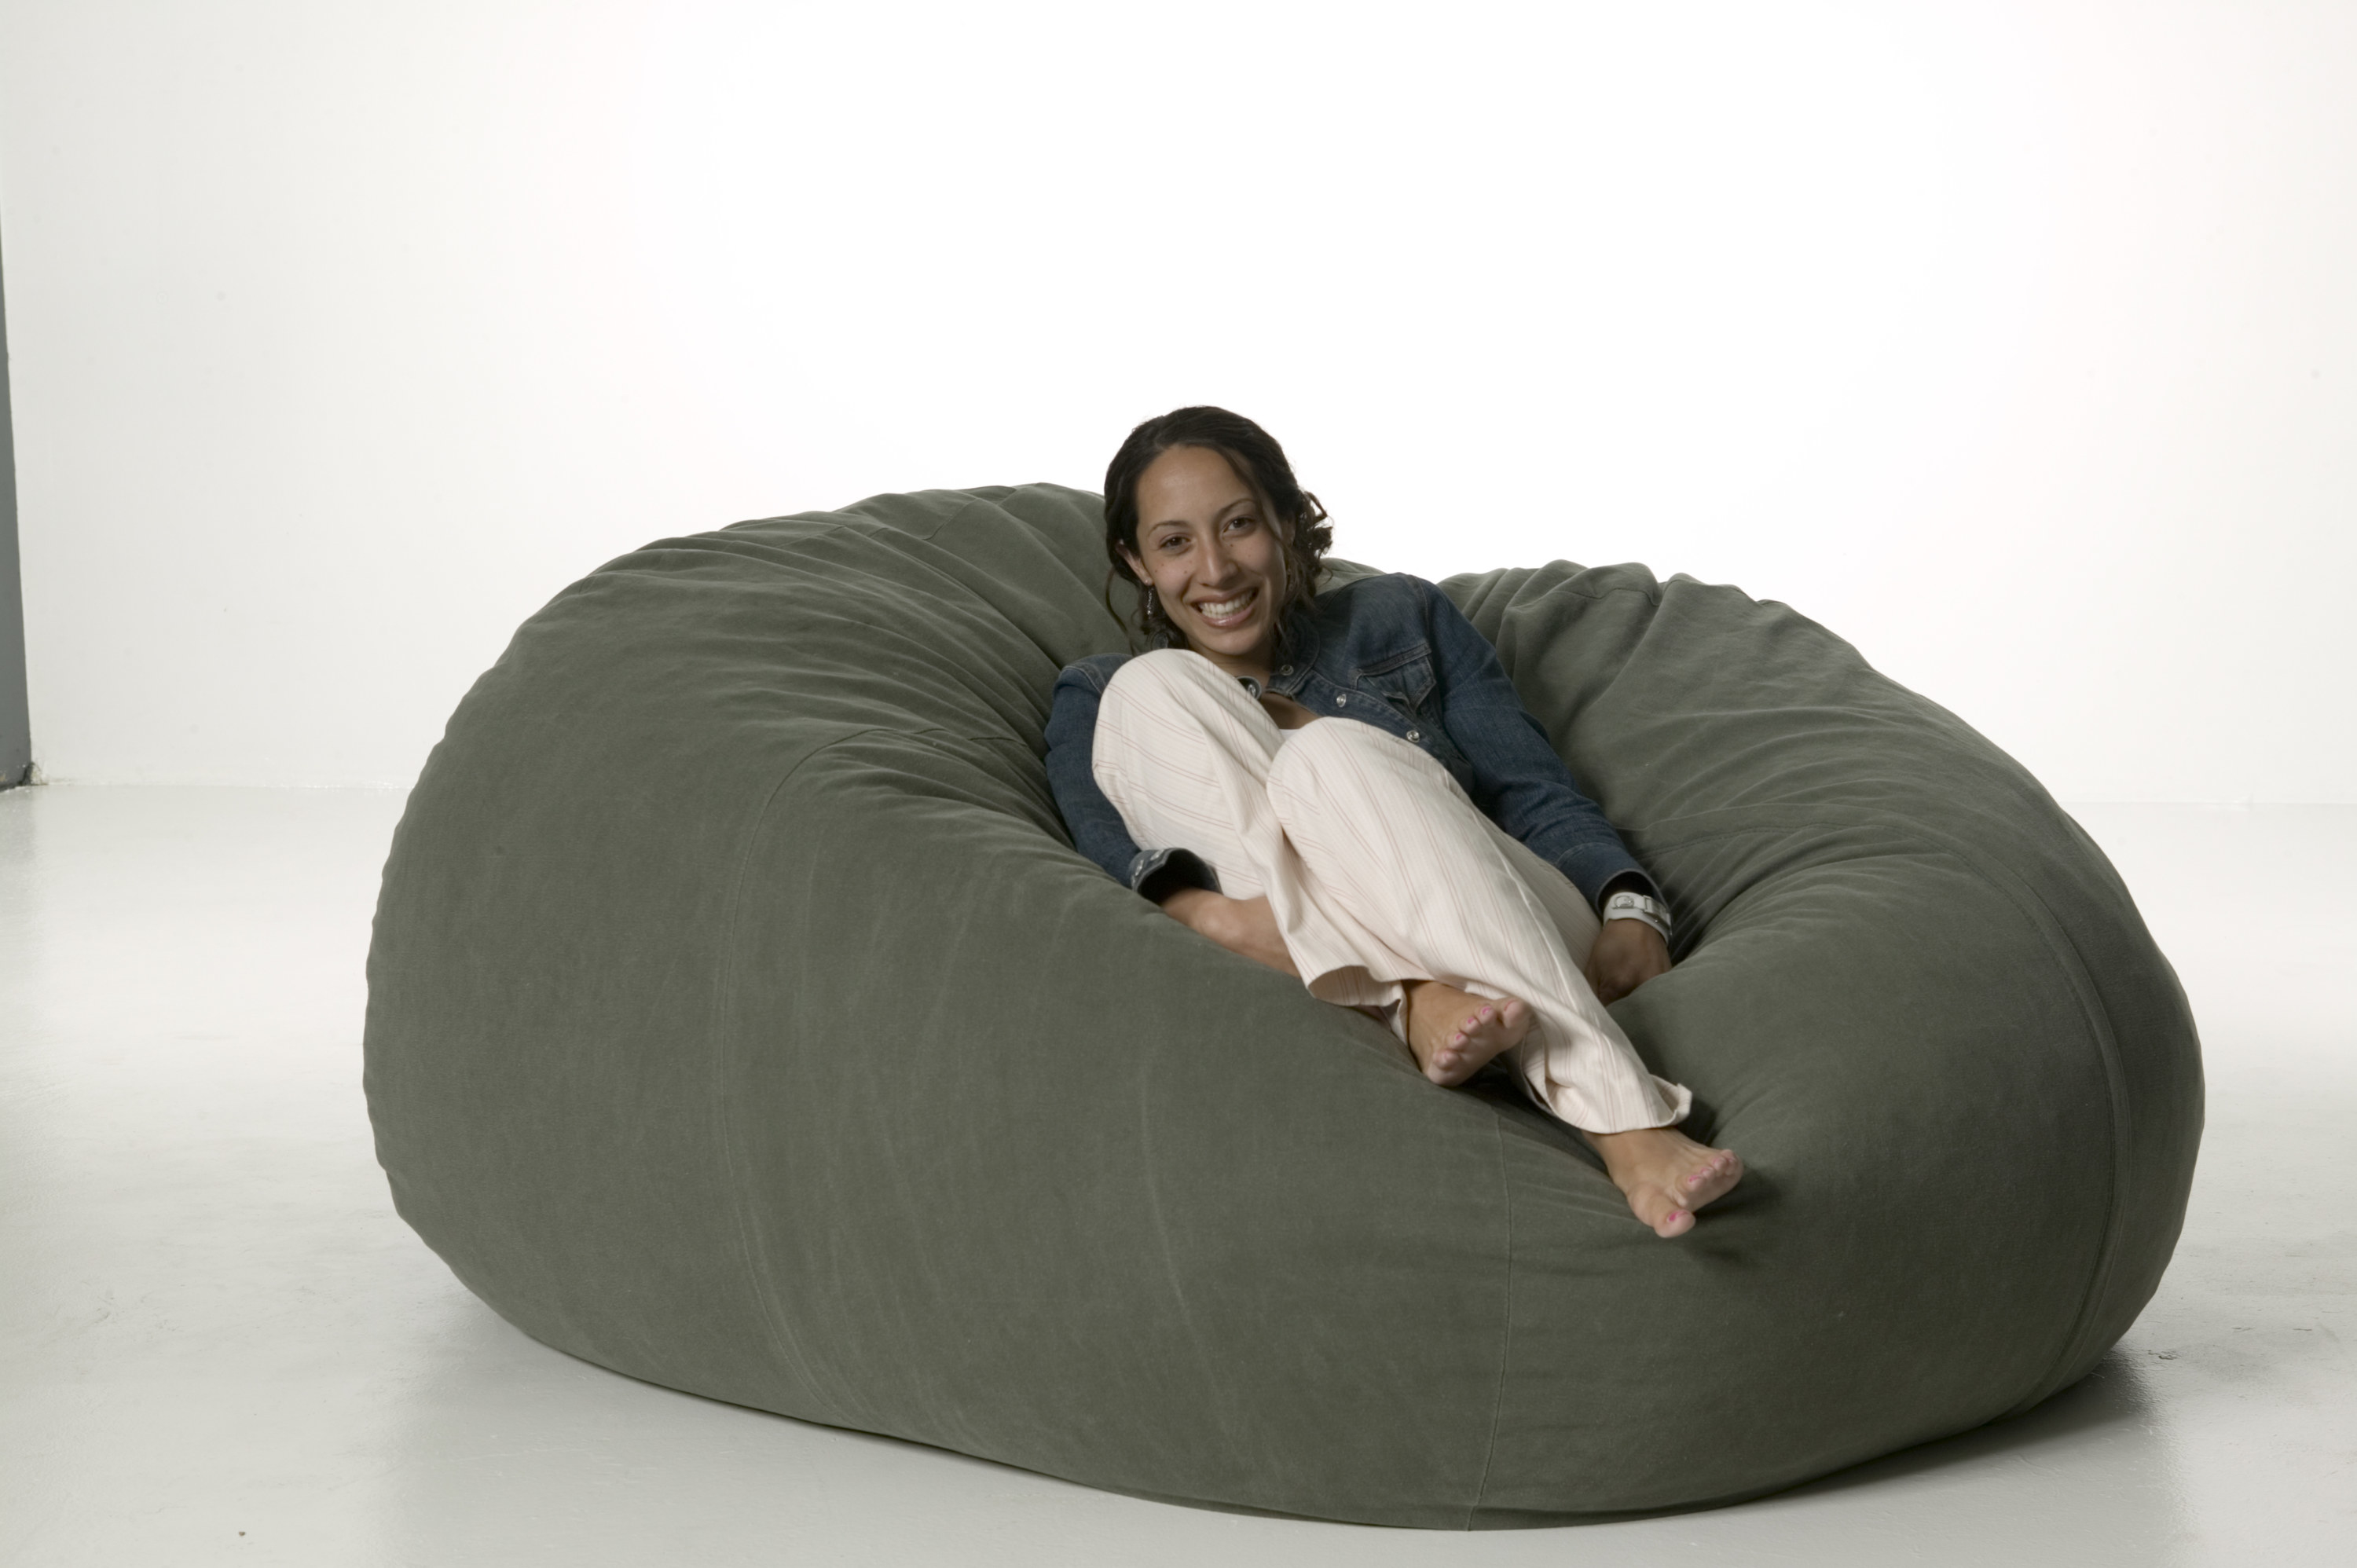 A girl sits in a big round bean bag cushion chair